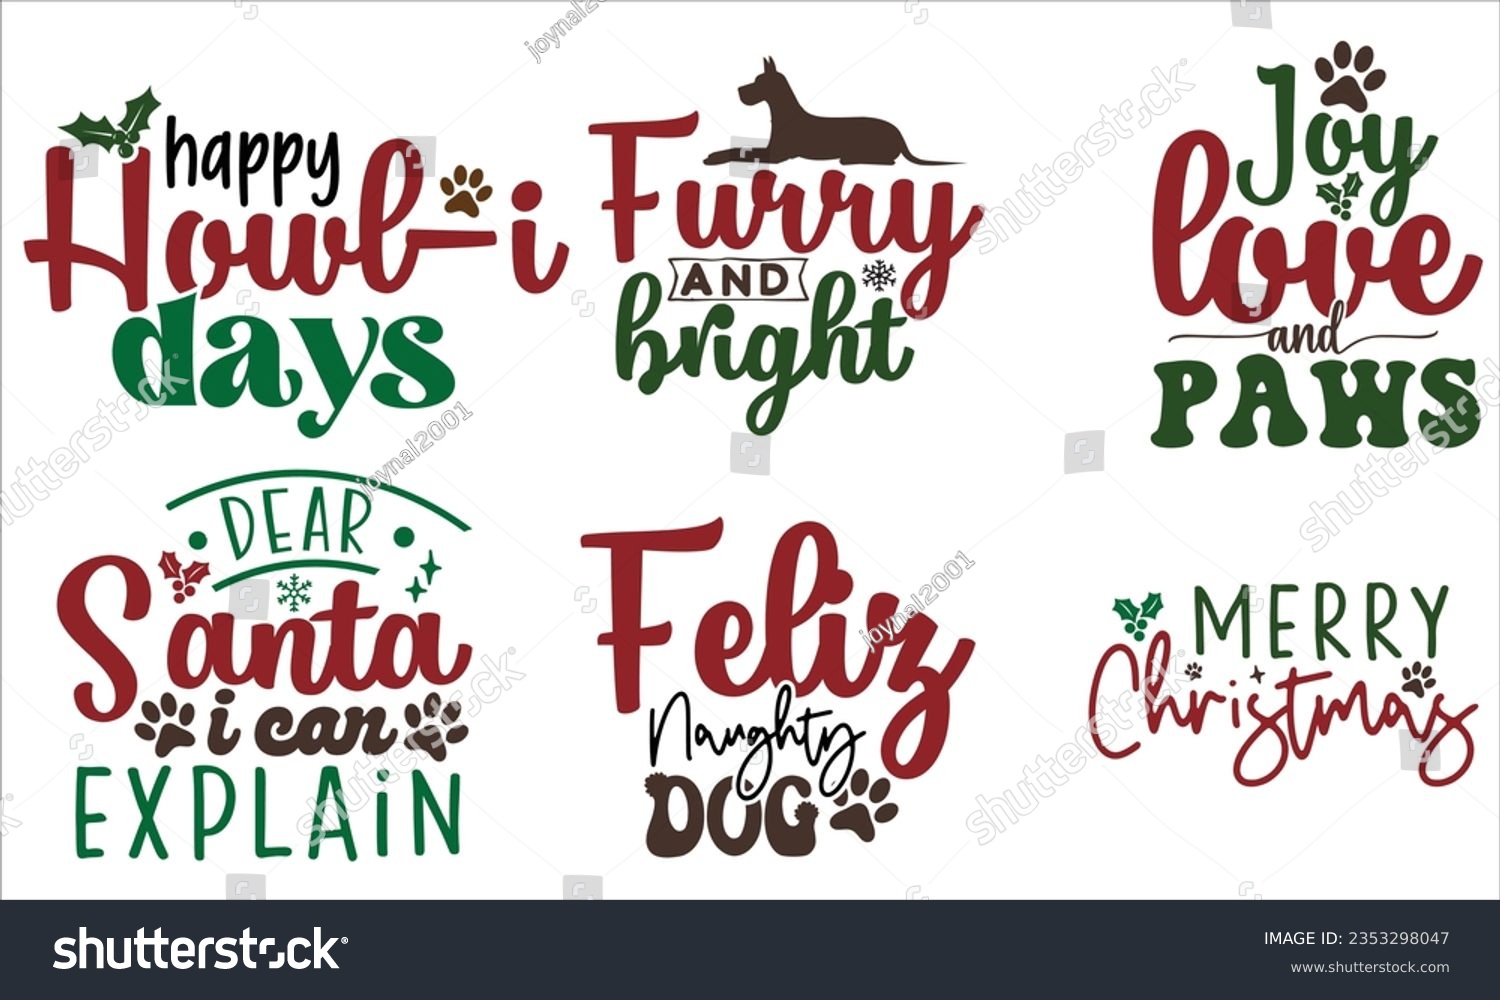 SVG of Christmas Dog Design, Christmas Dog SVG Design Template, Christmas Dog SVG bundle. svg